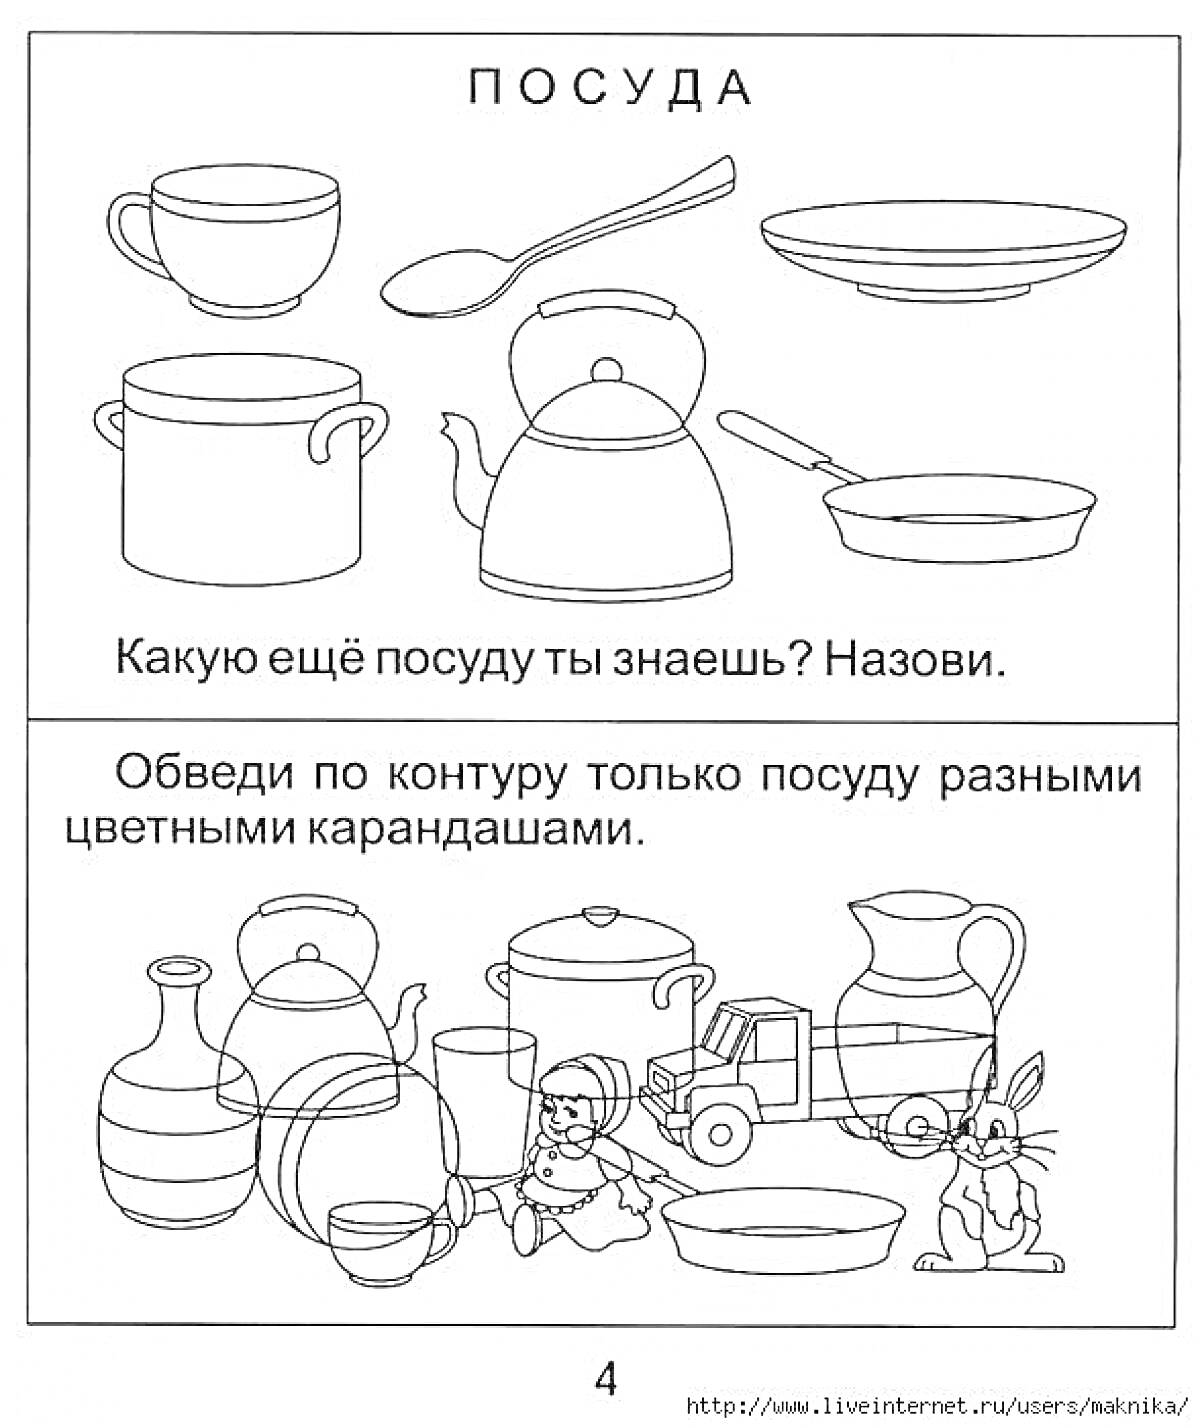 Раскраска Назовите посуду. Обведение посуды. На изображении: чашка, ложка, тарелка, кастрюля, чайник, миска, ваза, чайник, кувшин, миска, игрушка-головоломка, кукла, грузовик.